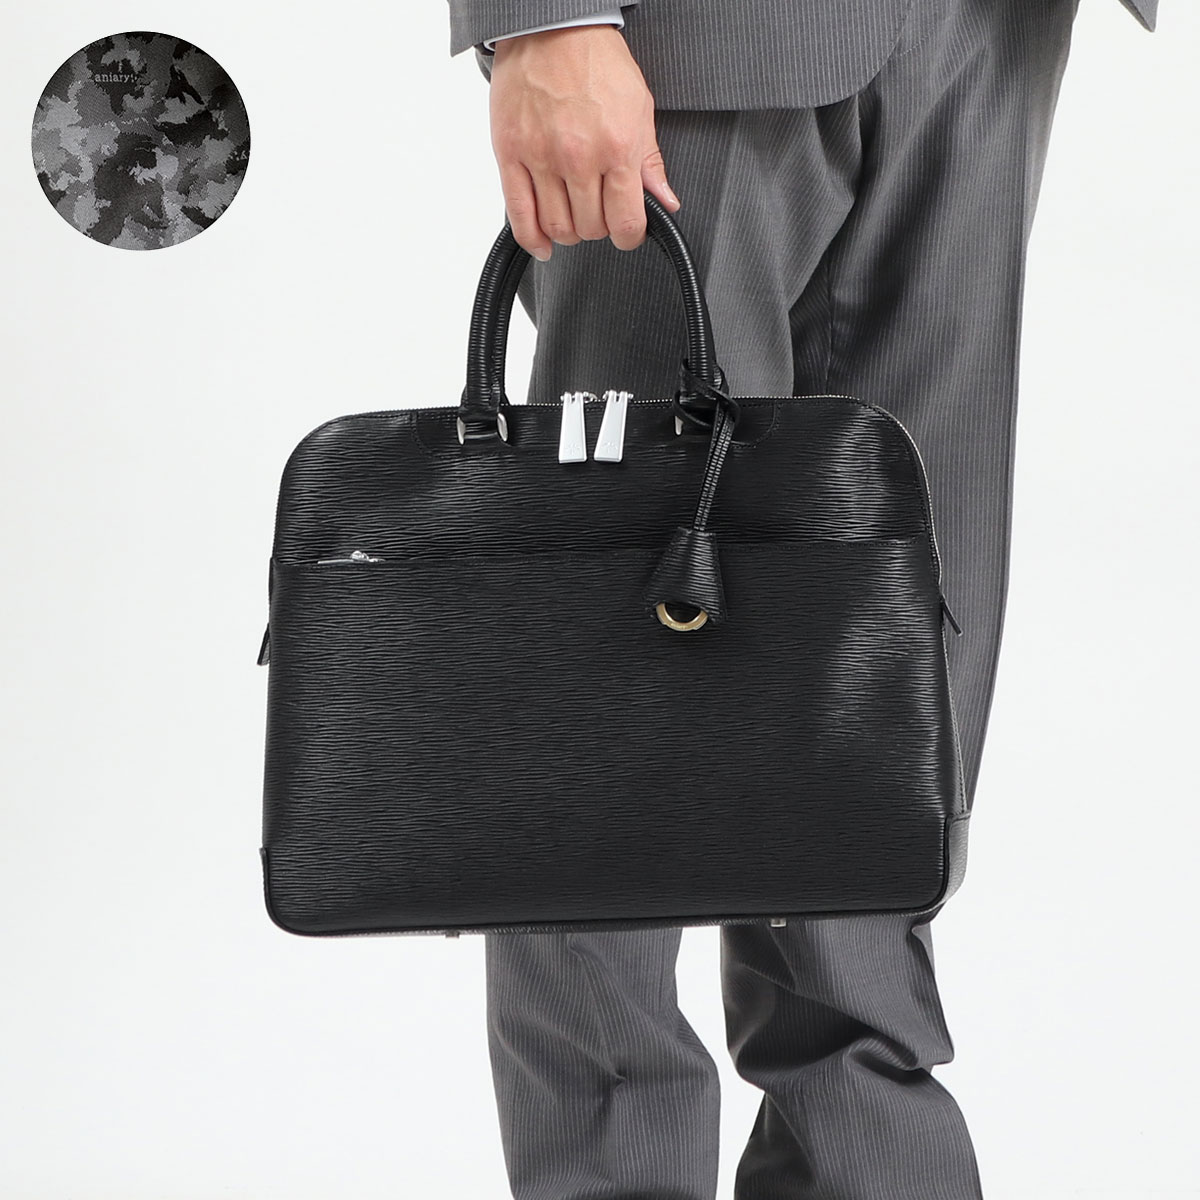 アニアリ／aniary バッグ ブリーフケース ビジネスバッグ 鞄 ビジネス メンズ 男性 男性用レザー 革 本革 ネイビー 紺  11-01003 フラップ式 迷彩・カモフラージュ柄